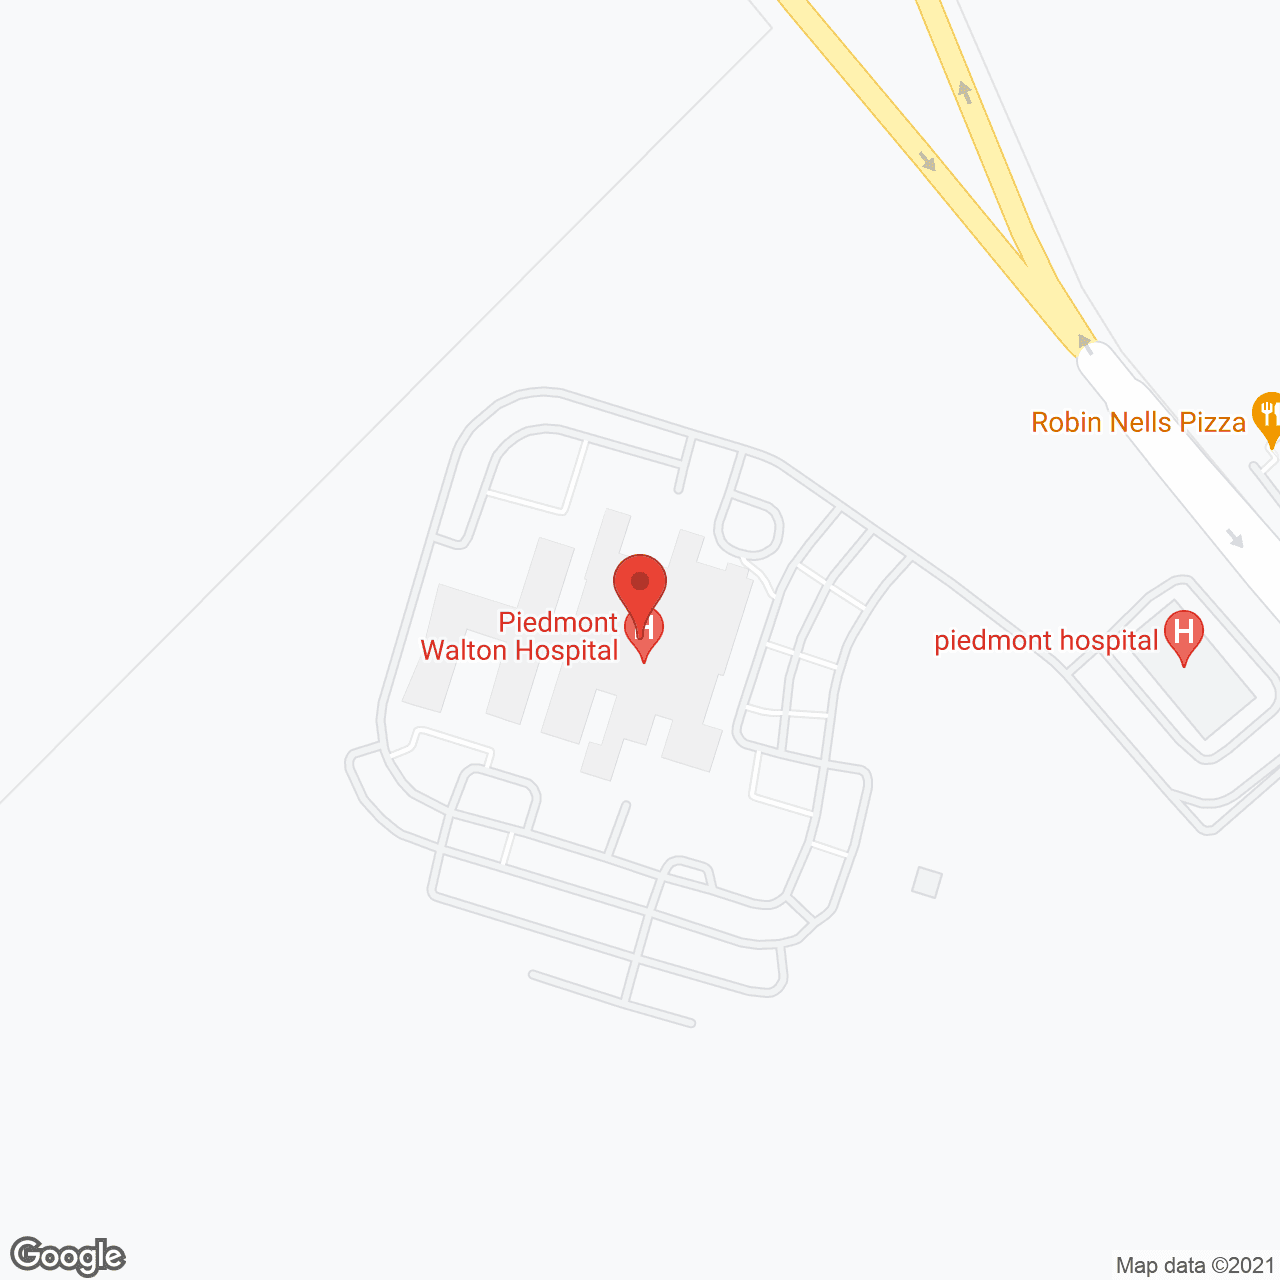 Piedmont Walton Hospital in google map